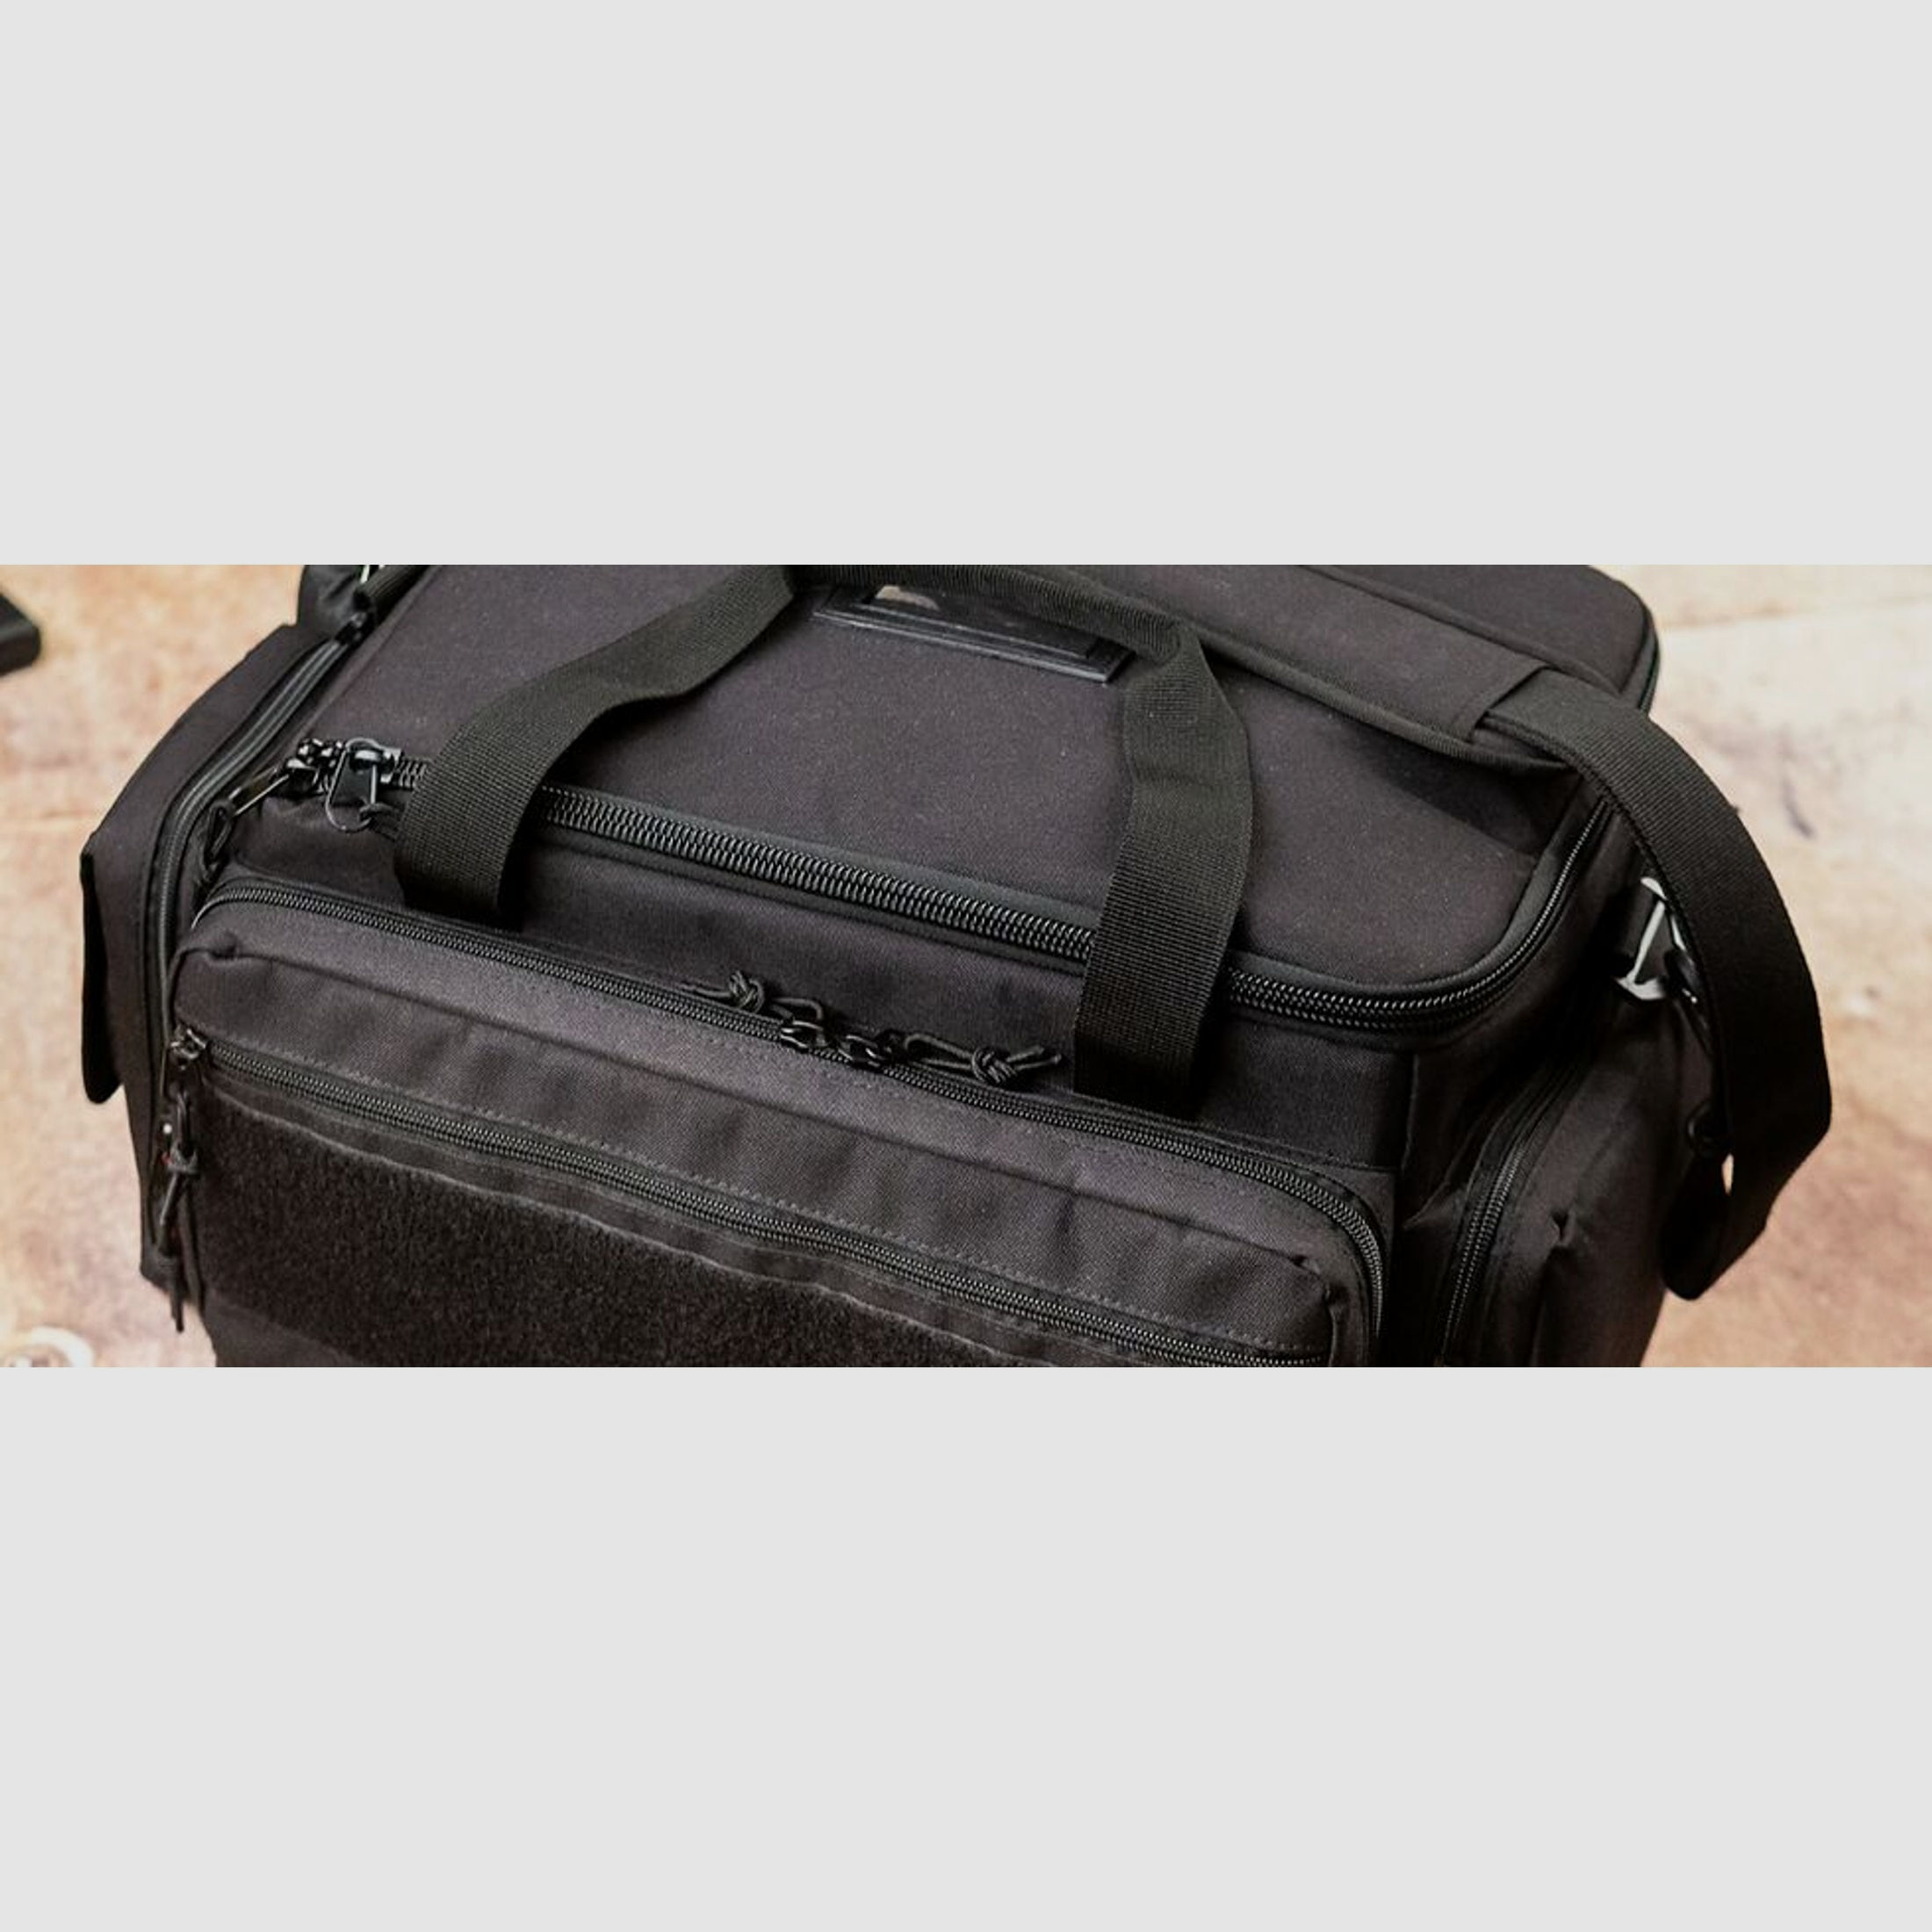 Hera Arms	 Range Bag Velcro Rab black